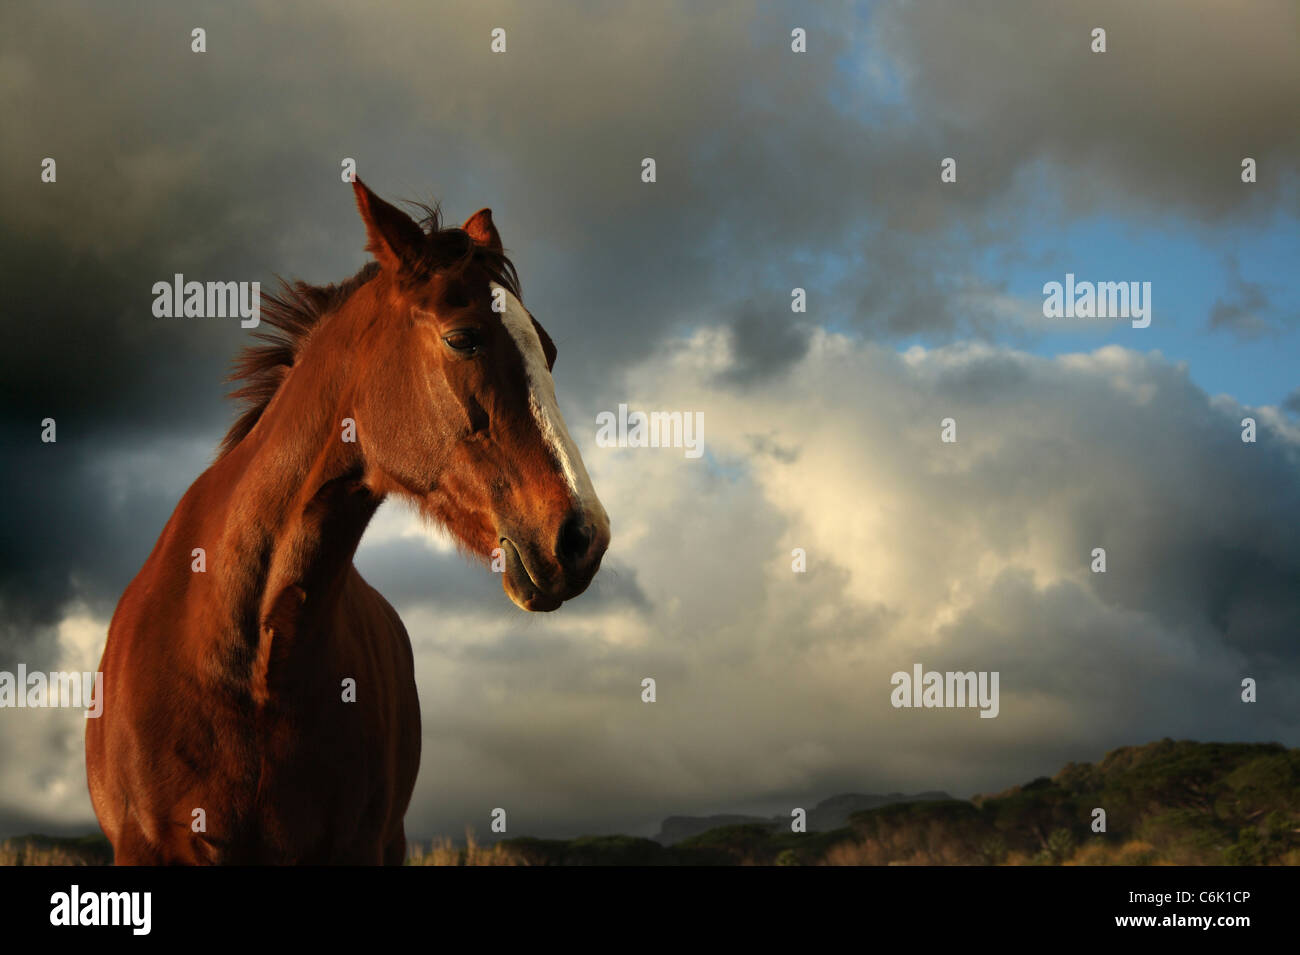 Ángulo de visión baja de un caballo con nubes de tormenta en el fondo Foto de stock